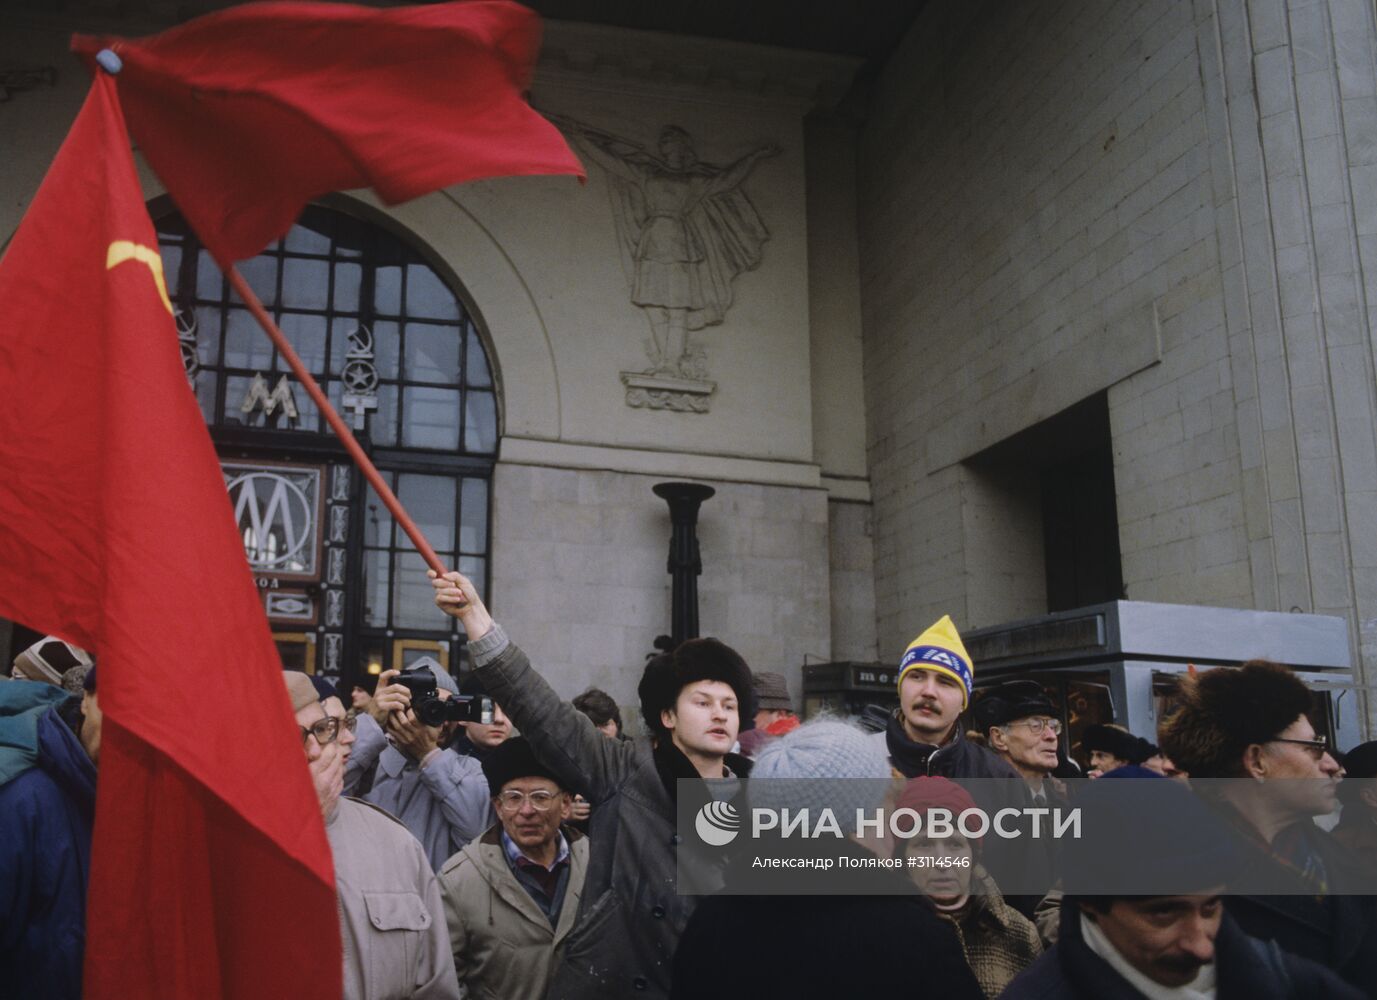 Митинг у станции метро "Октябрьская" в Москве